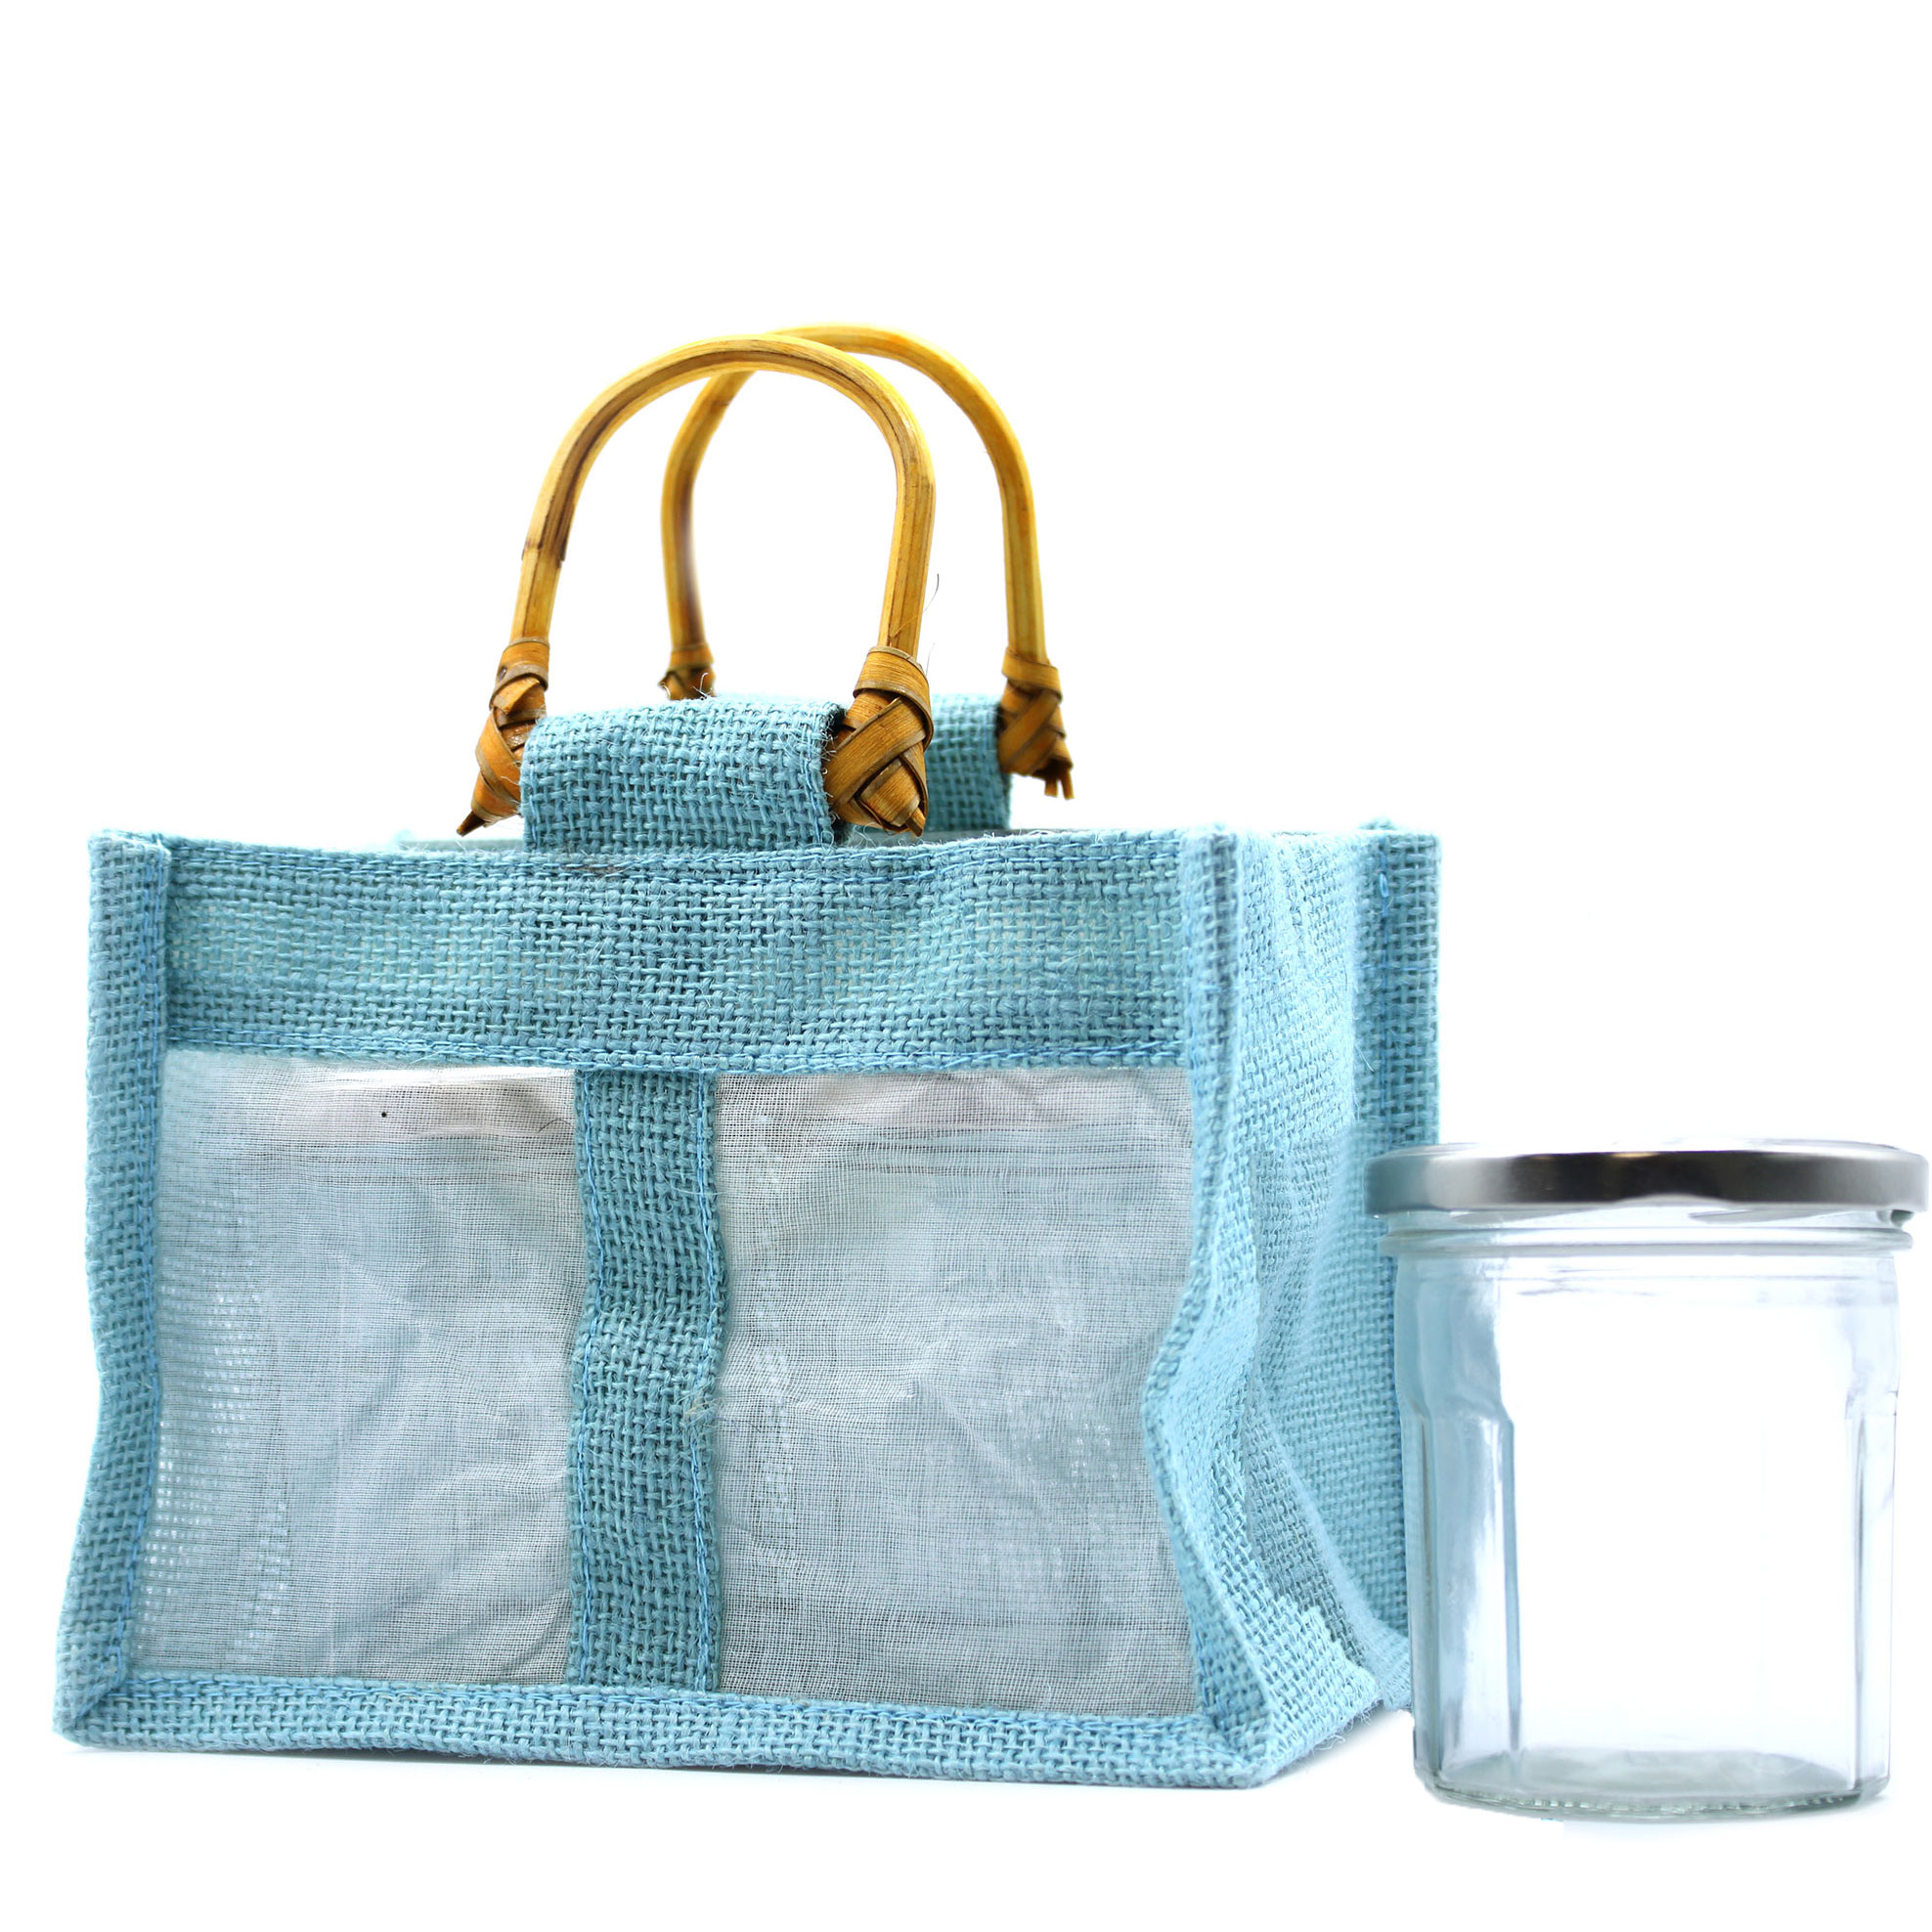 Dárková taška z juty a bavlny - Modro-šedá - 2 okénka